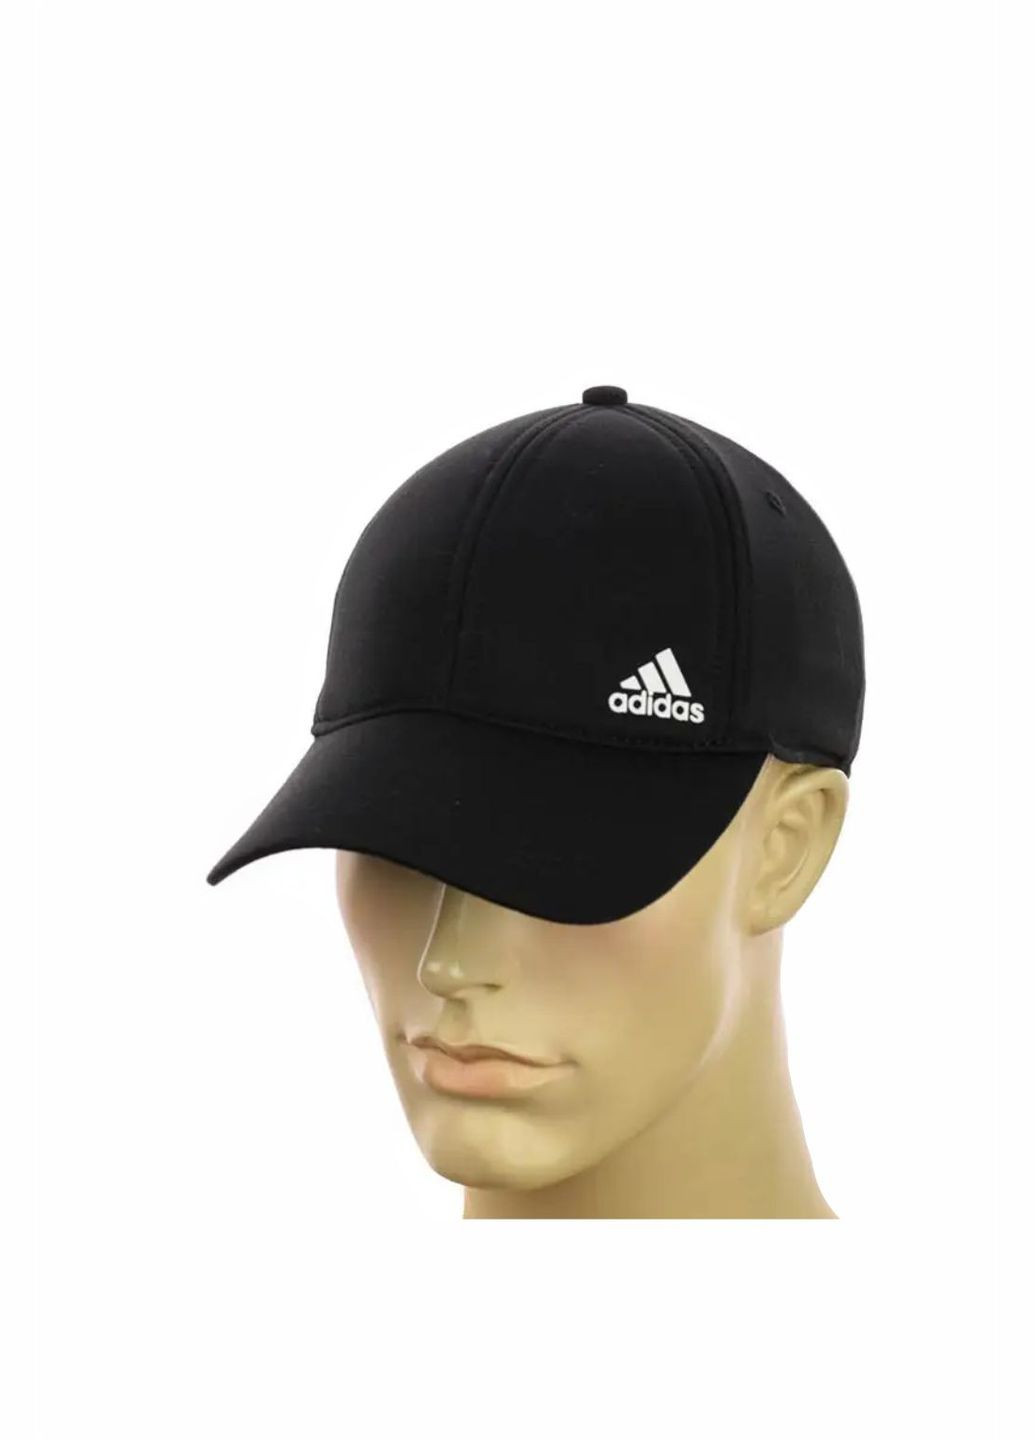 Трикотажная мужская кепка на резинке Adidas / Адидас No Brand чоловіча кепка закрита (278279404)